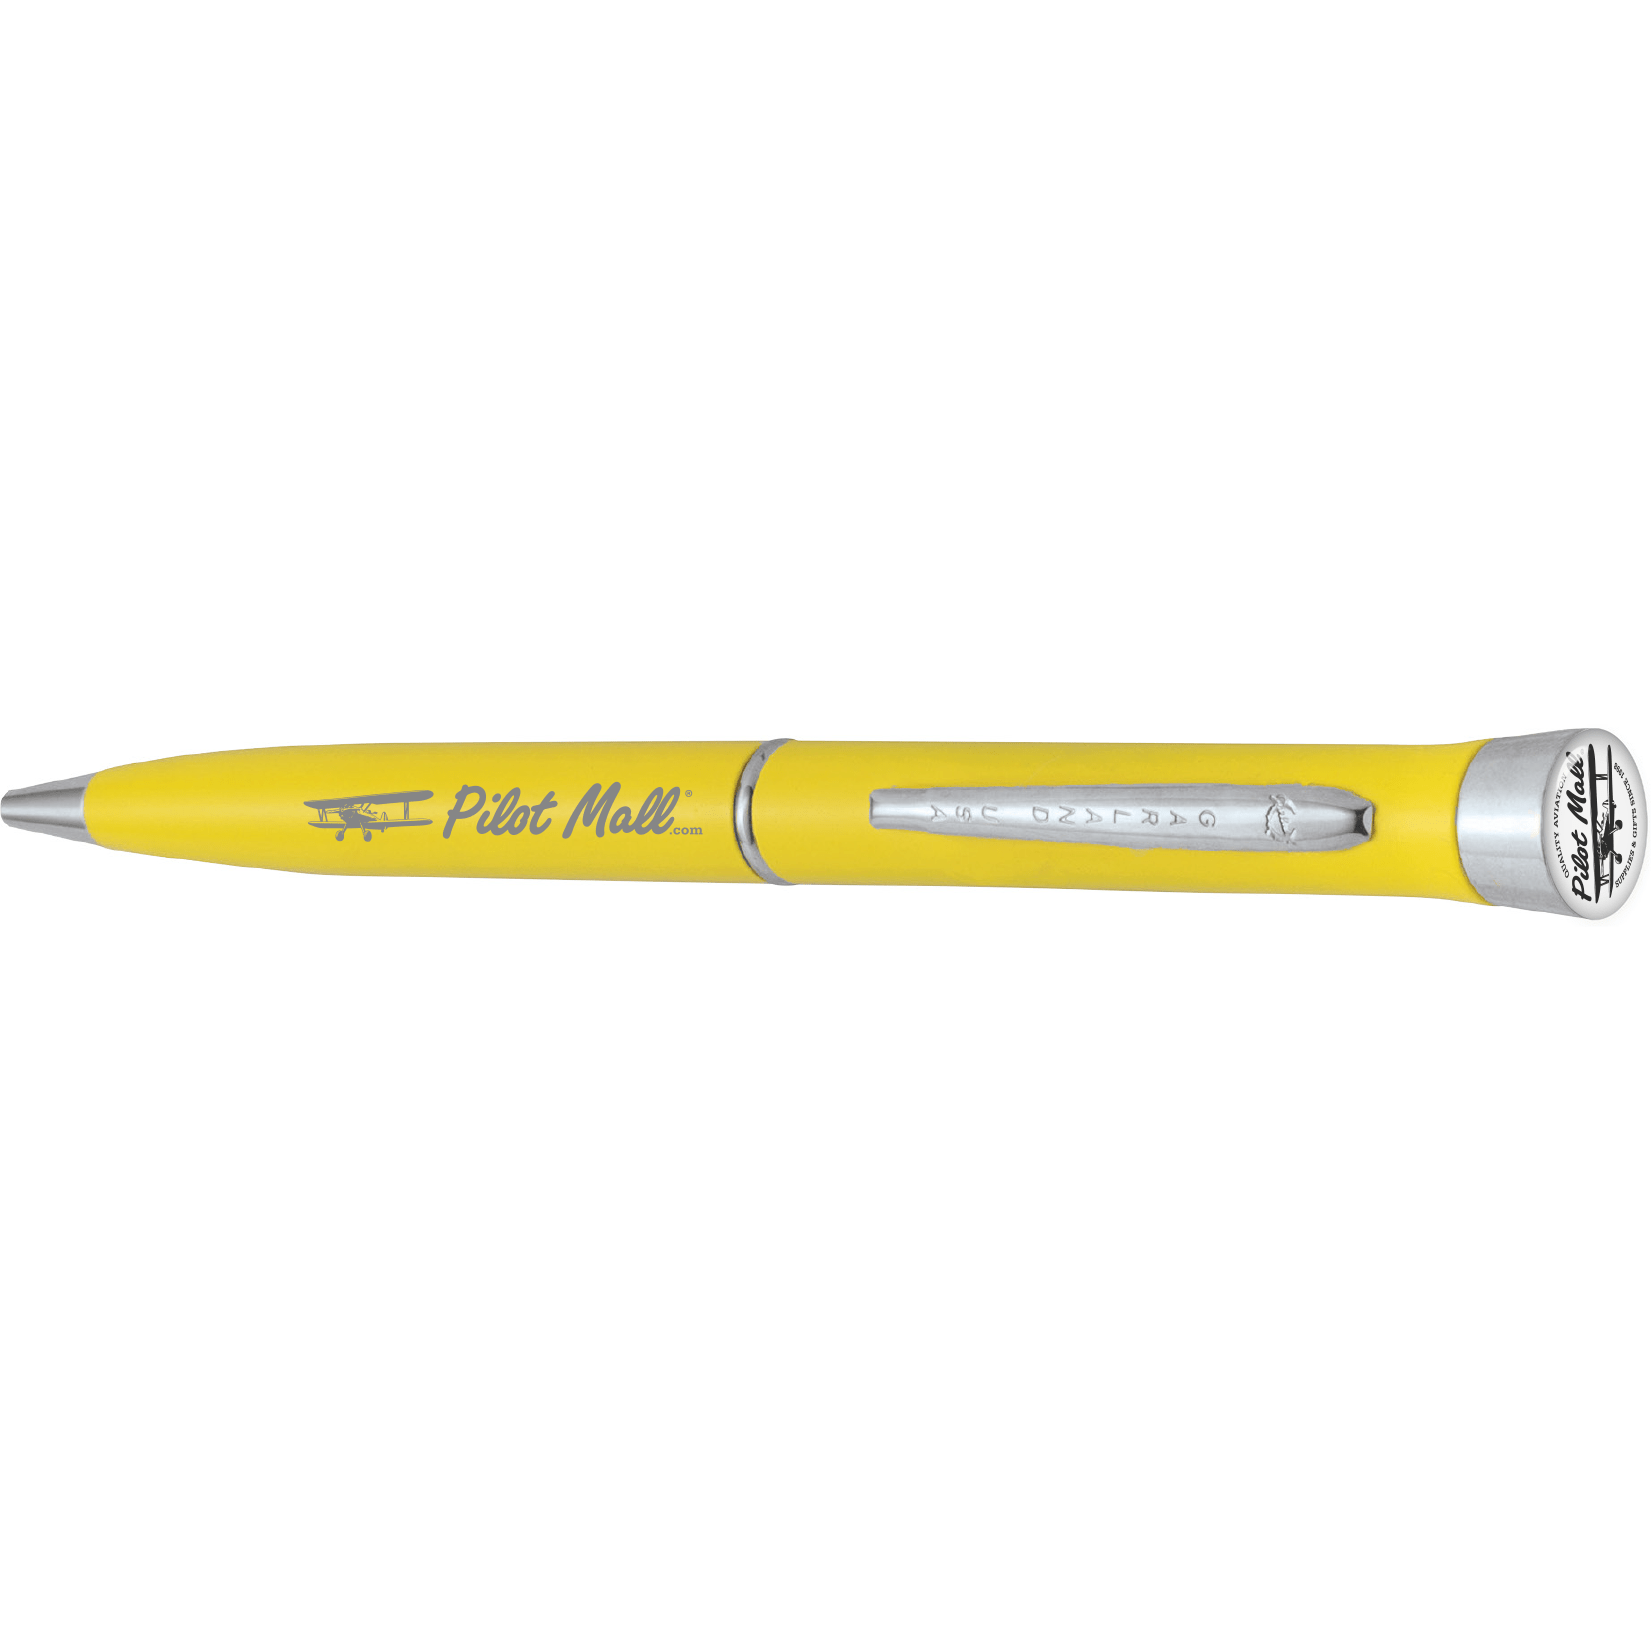 PilotMall.com Pen Safety Yellow